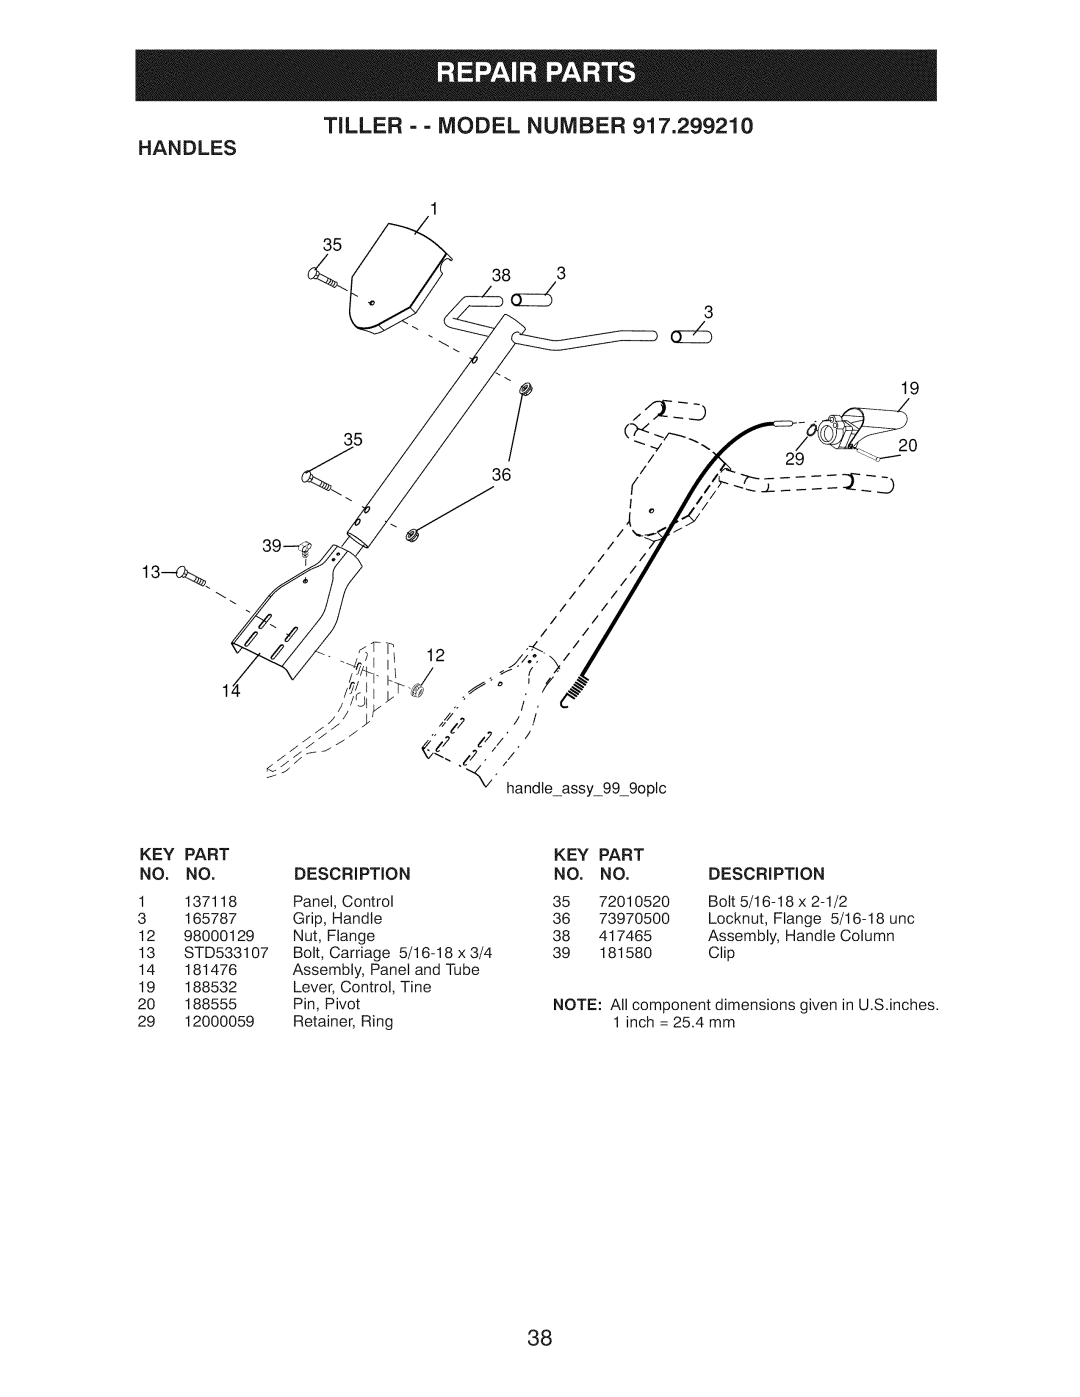 Craftsman 917.29921 owner manual Tiller - - Model Number Handles, Part 